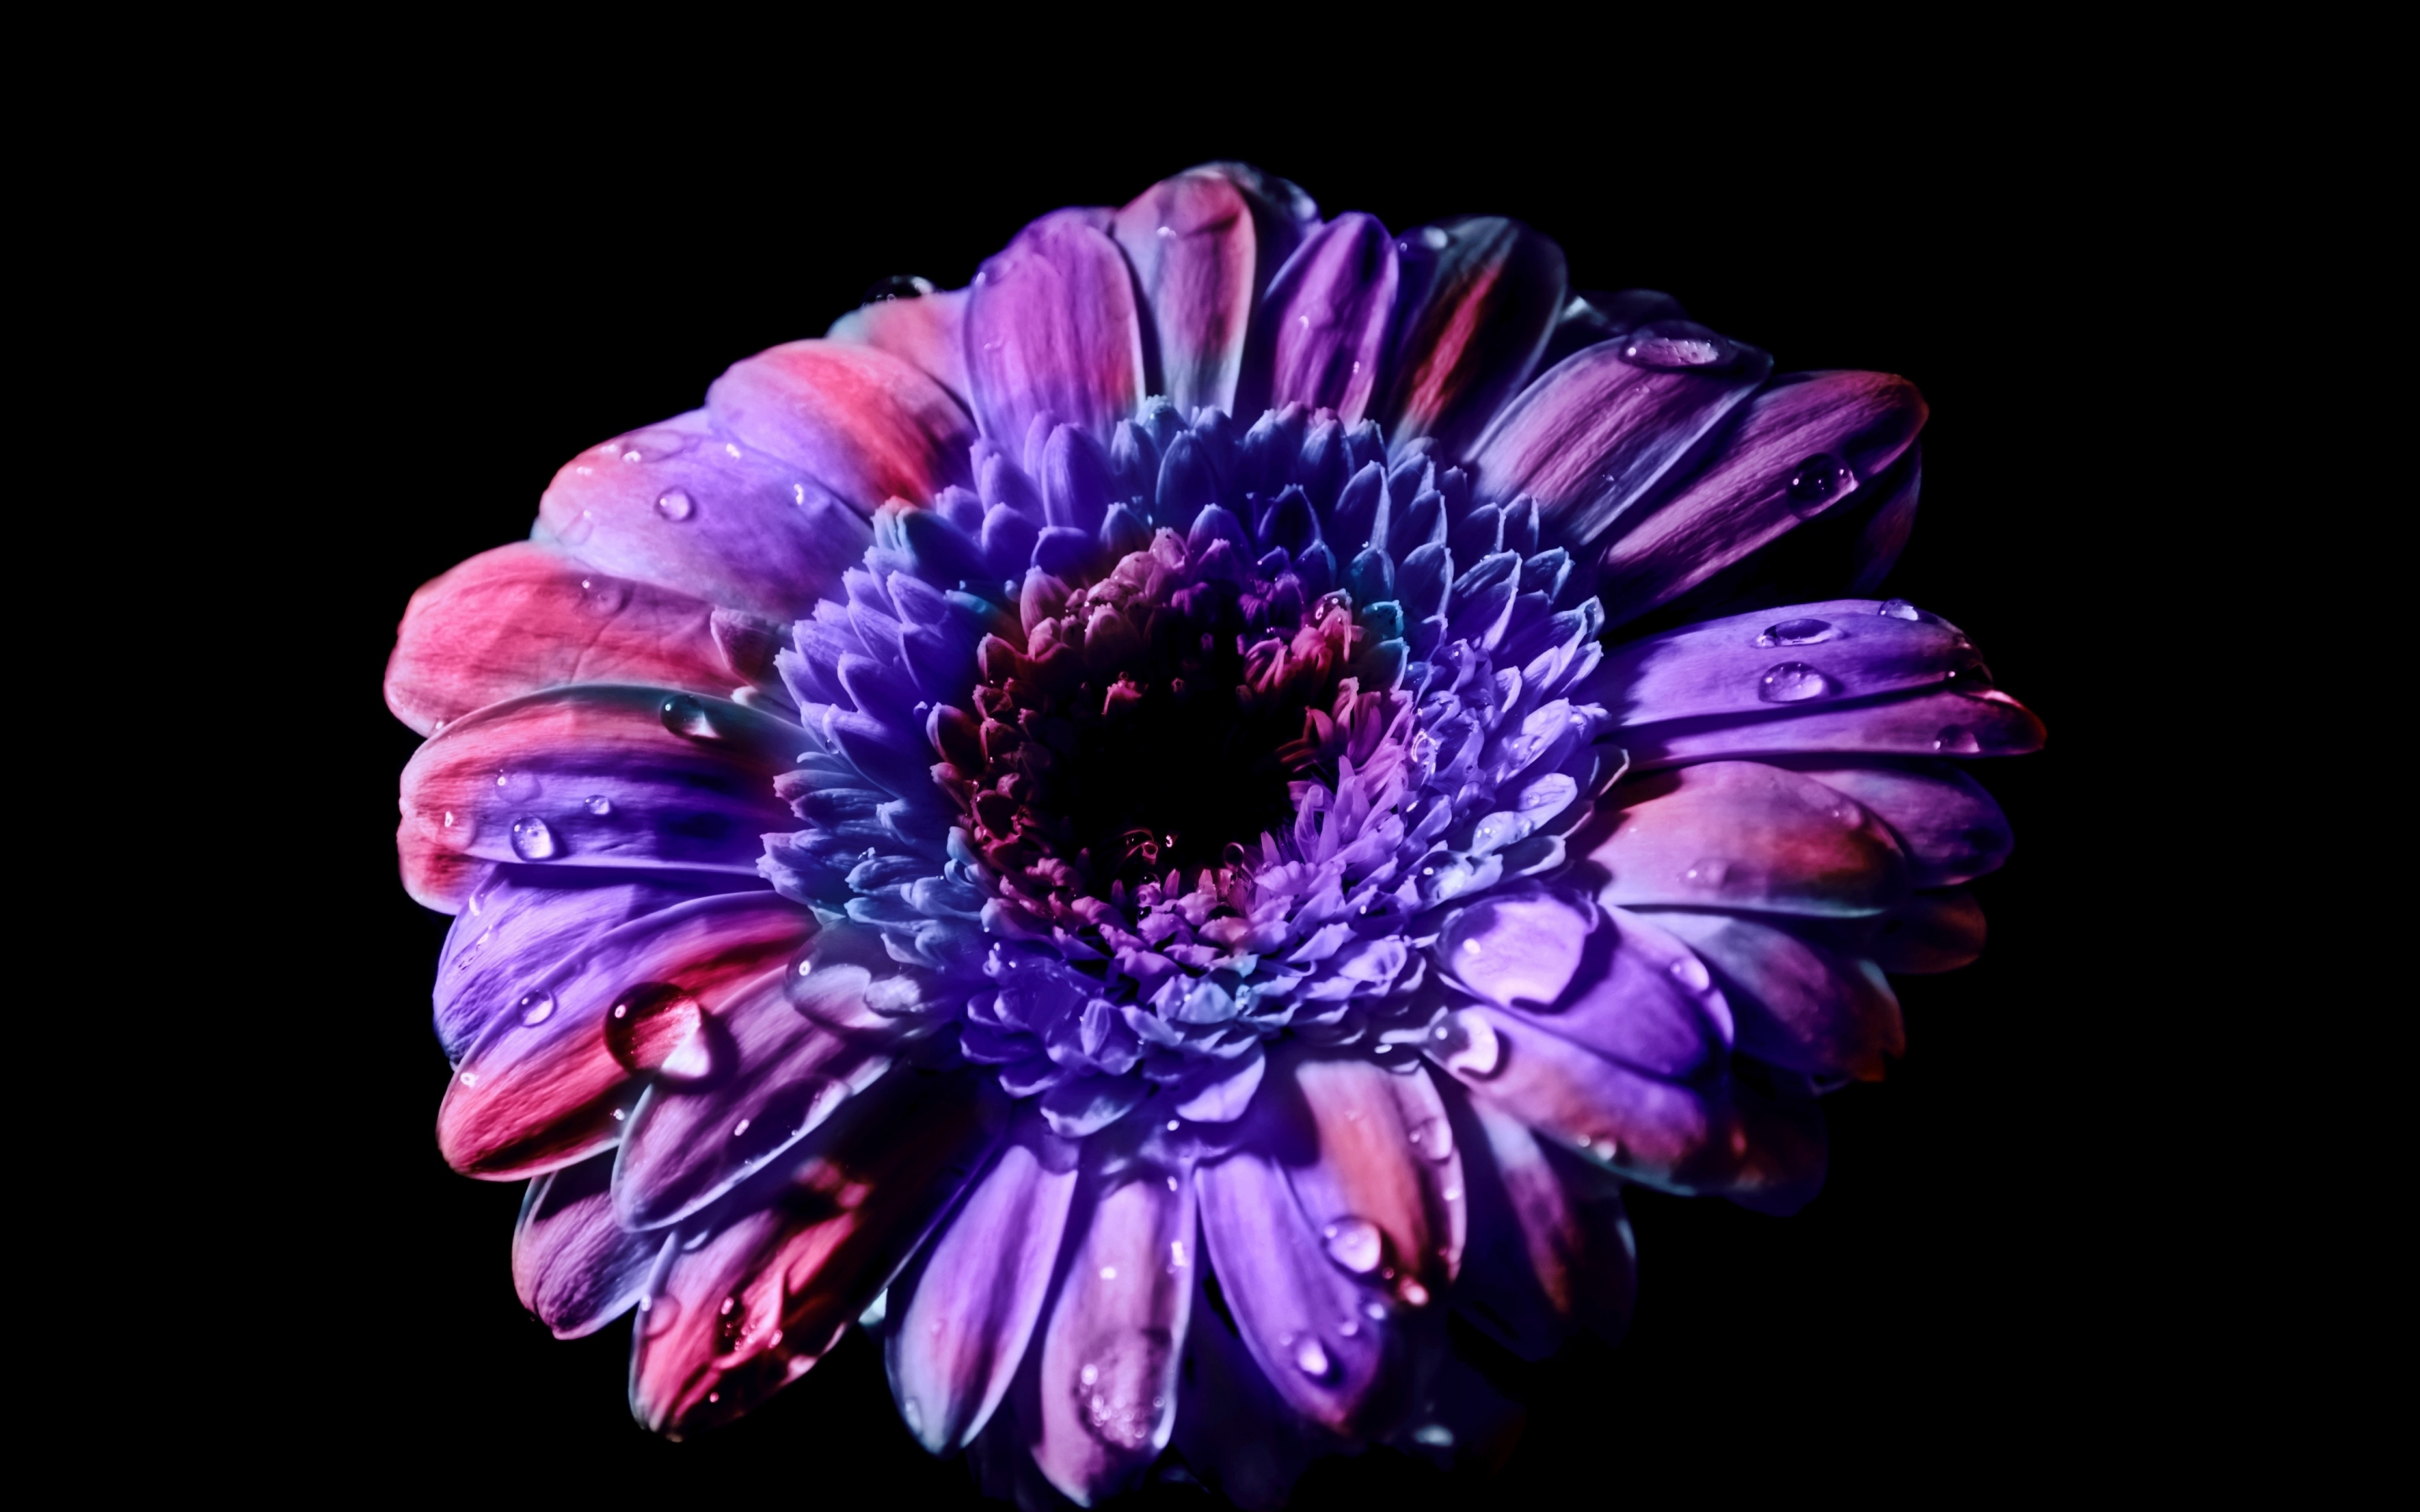 Gerbera, Daisy flower, close up, purple flower, 2880x1800 wallpaper